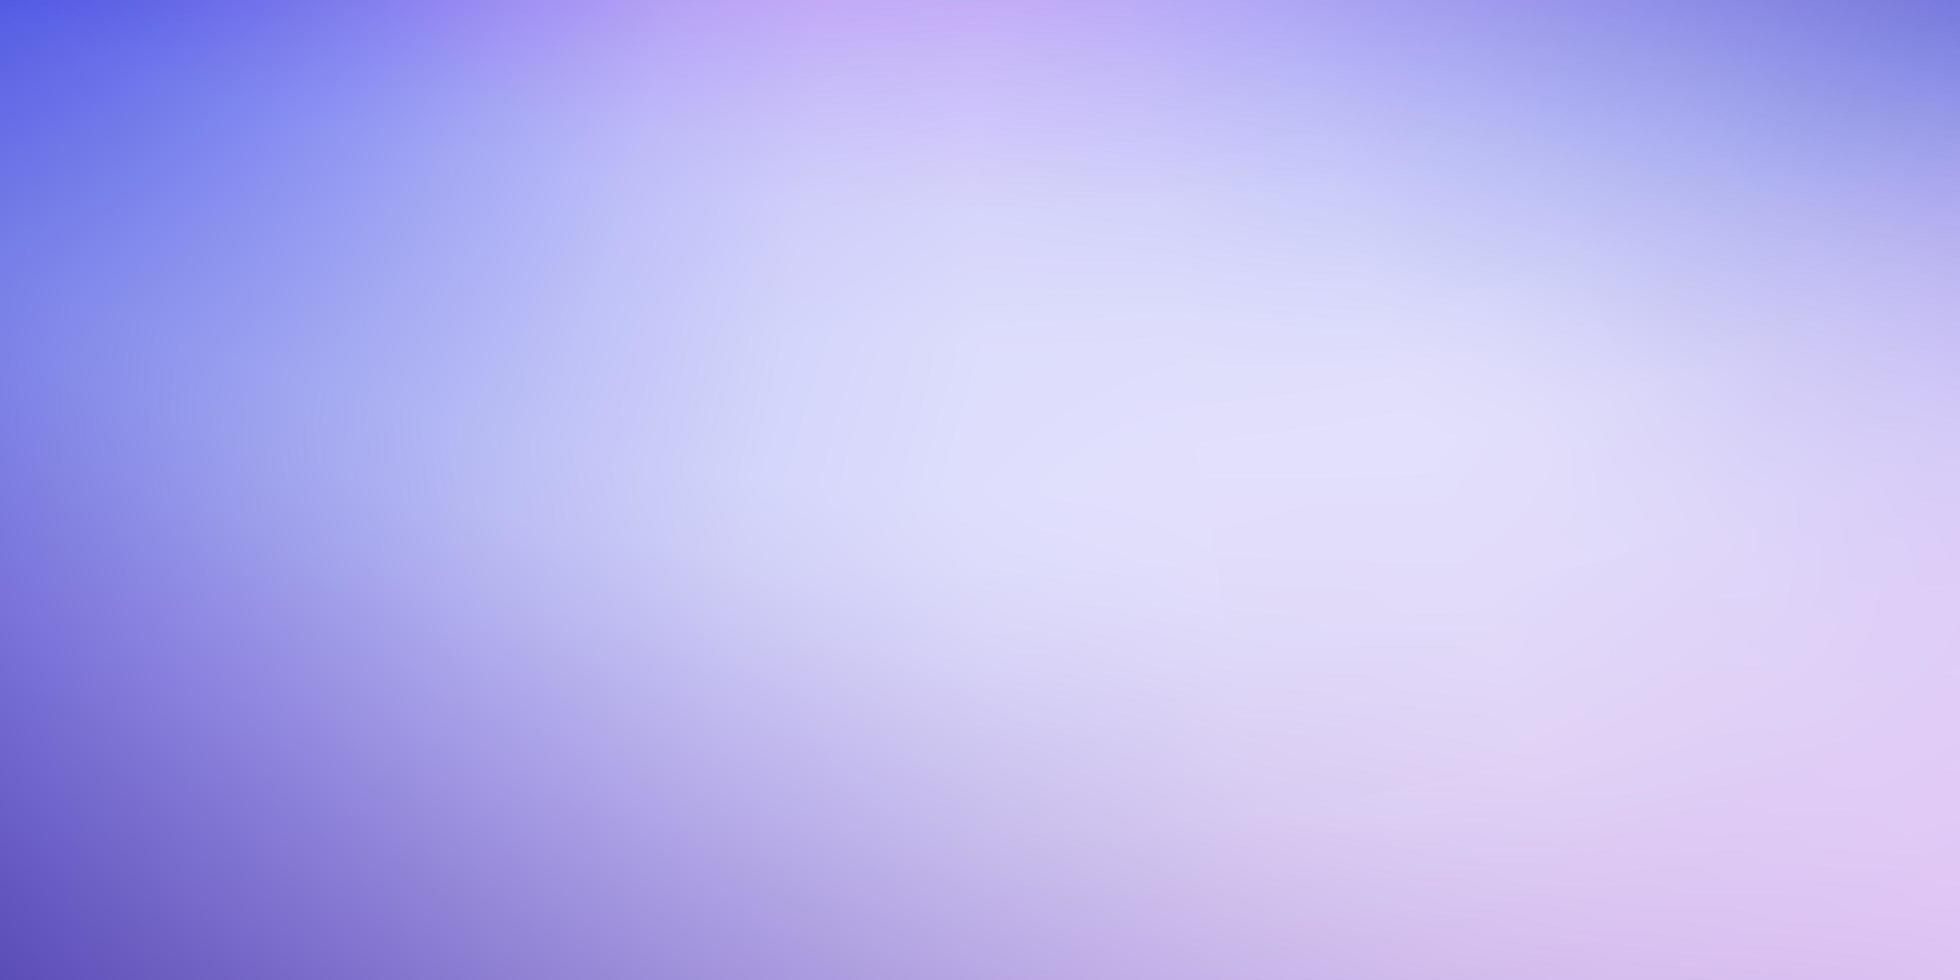 ljusrosa, blå vektor färgglad oskärpa bakgrund.